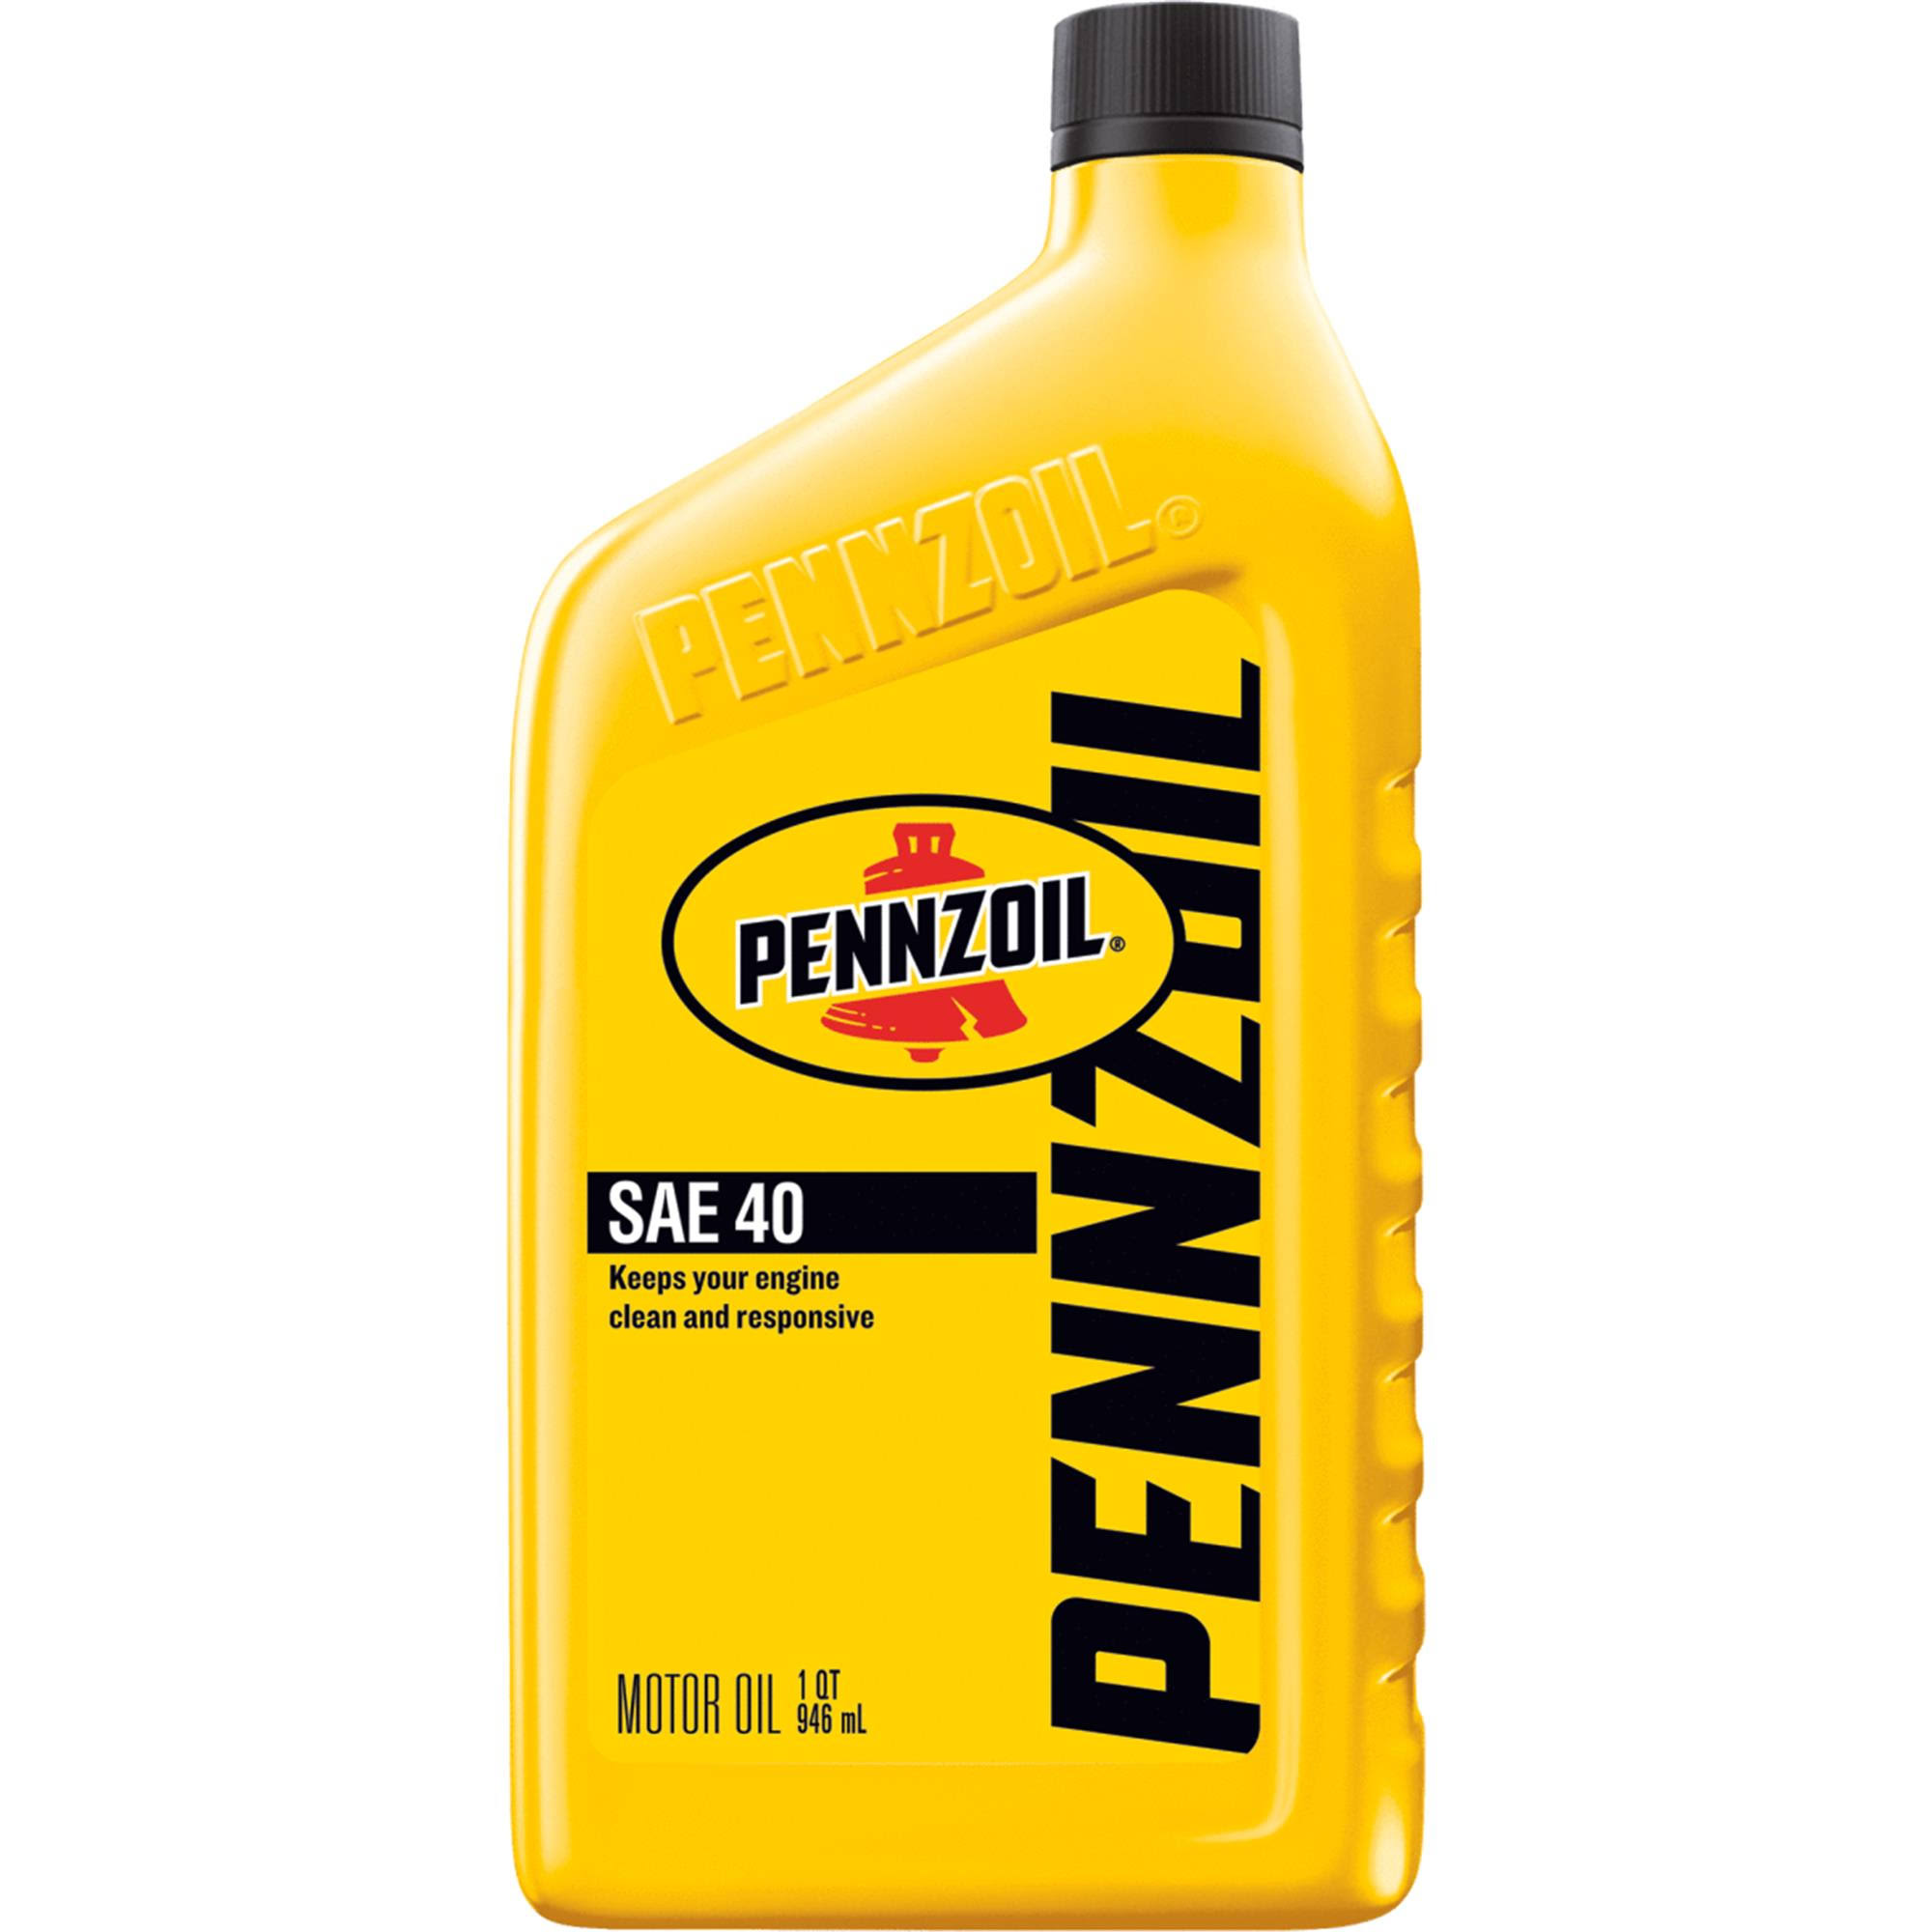 Pennzoil 550022817 HD Motor Oil - 1 Quart